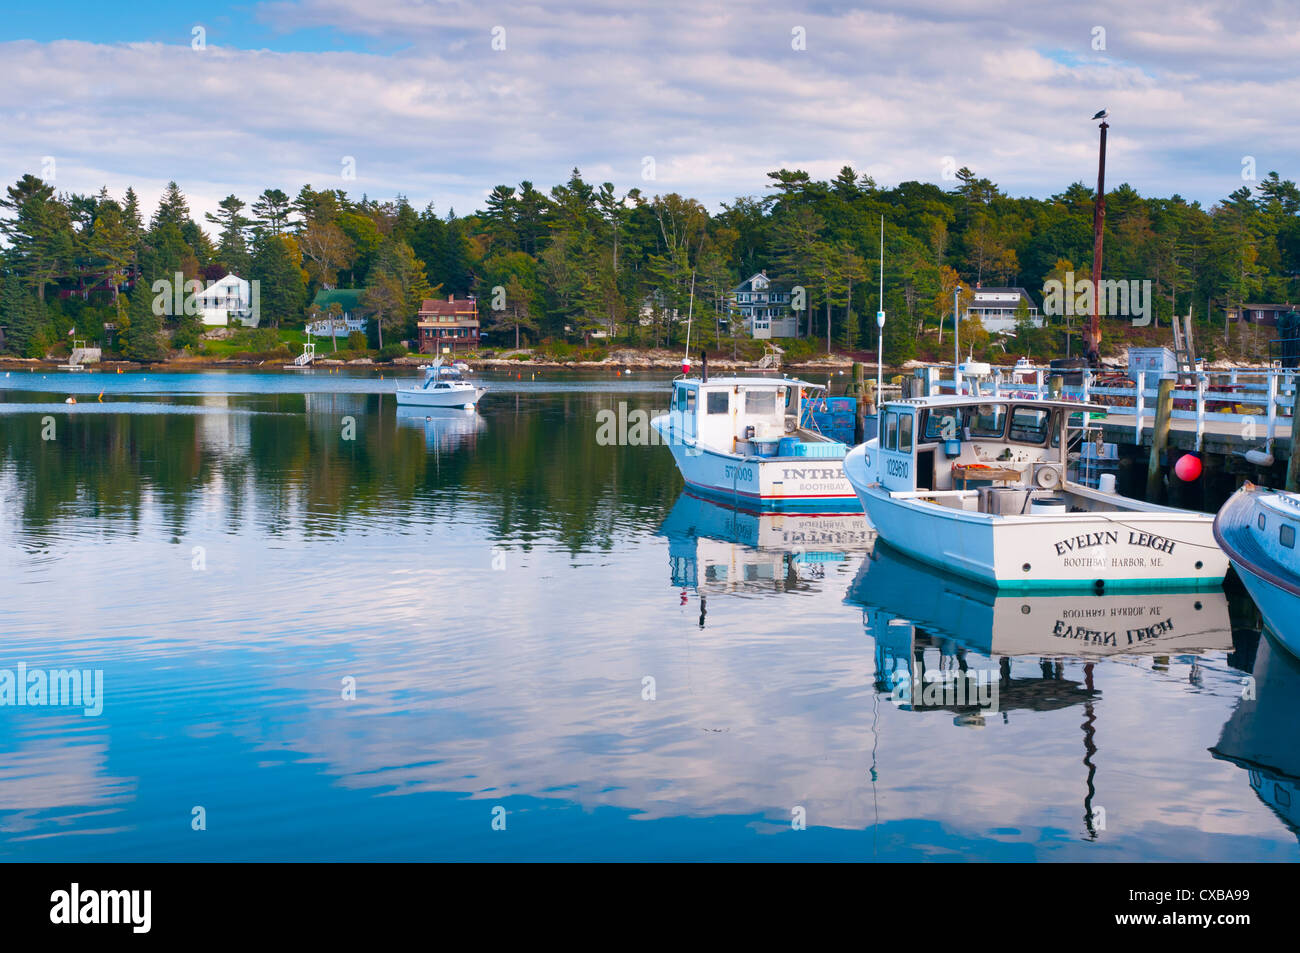 Bateaux de pêche au homard, Ogunquit, Maine, la Nouvelle Angleterre, États-Unis d'Amérique, Amérique du Nord Banque D'Images